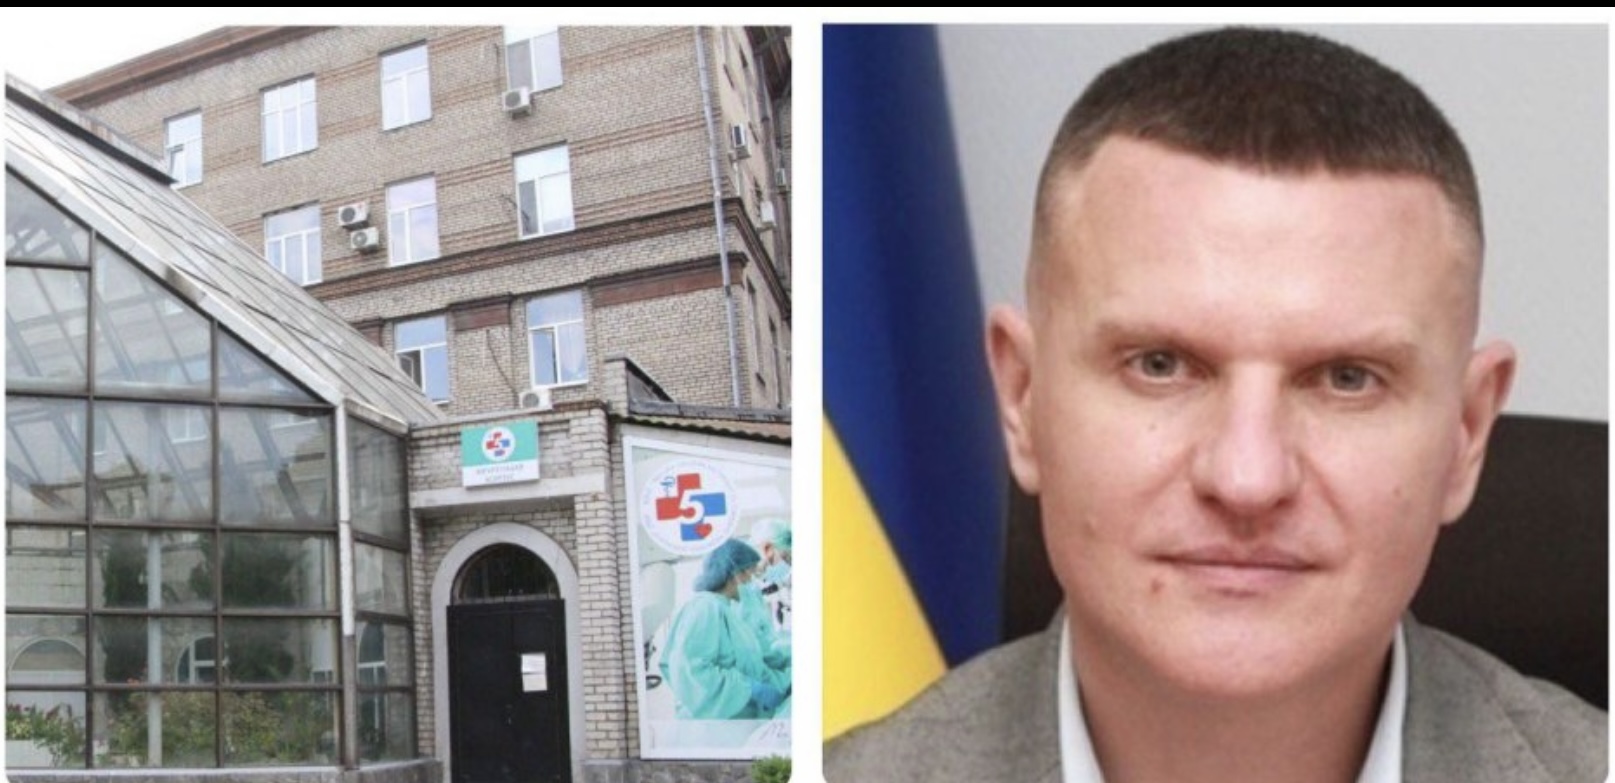 Чергова судова поразка Куртєва: головного лікаря 5-ї міської лікарні поновили на посаді